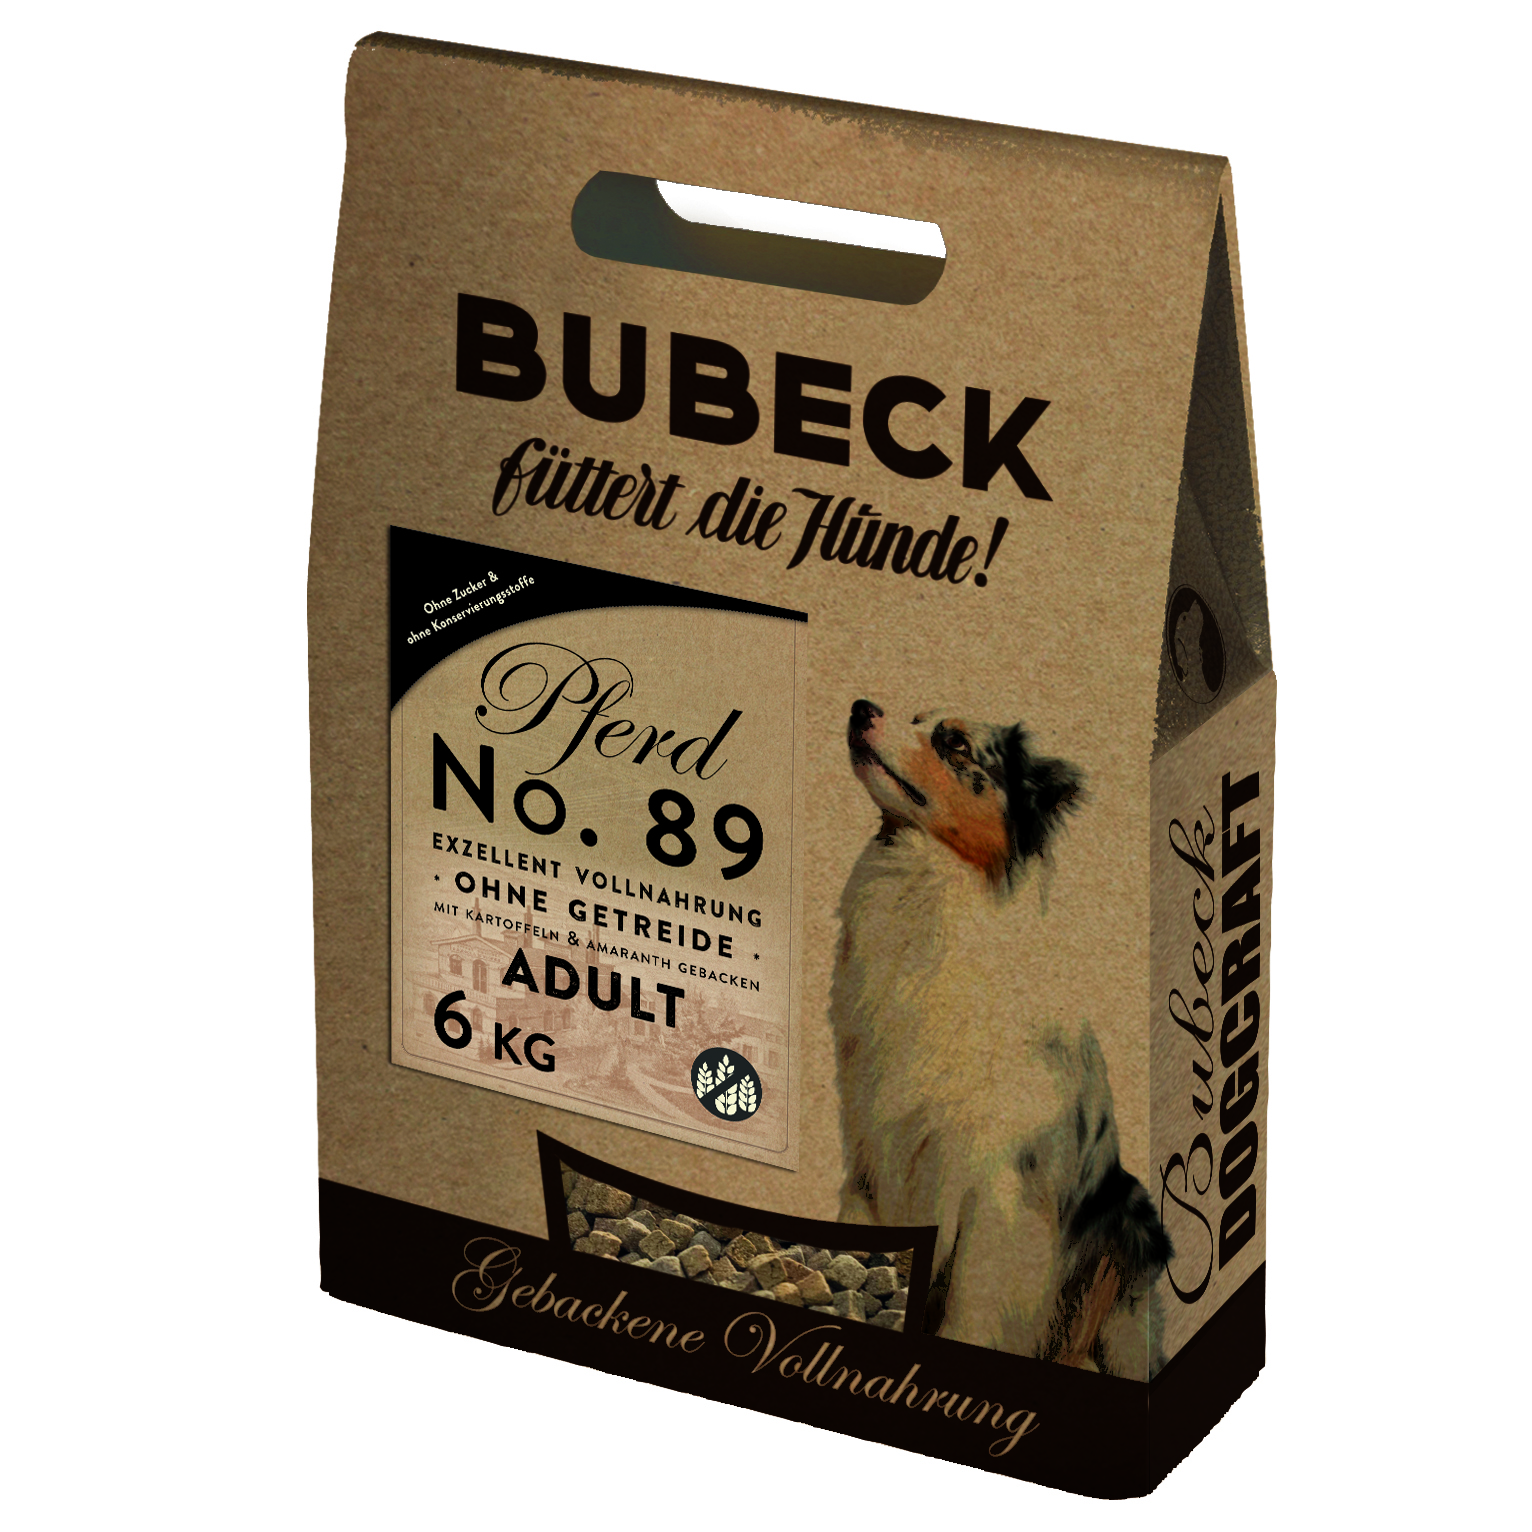 Bubeck, No. 89 Pferd mit Kartoffeln, 6 kg